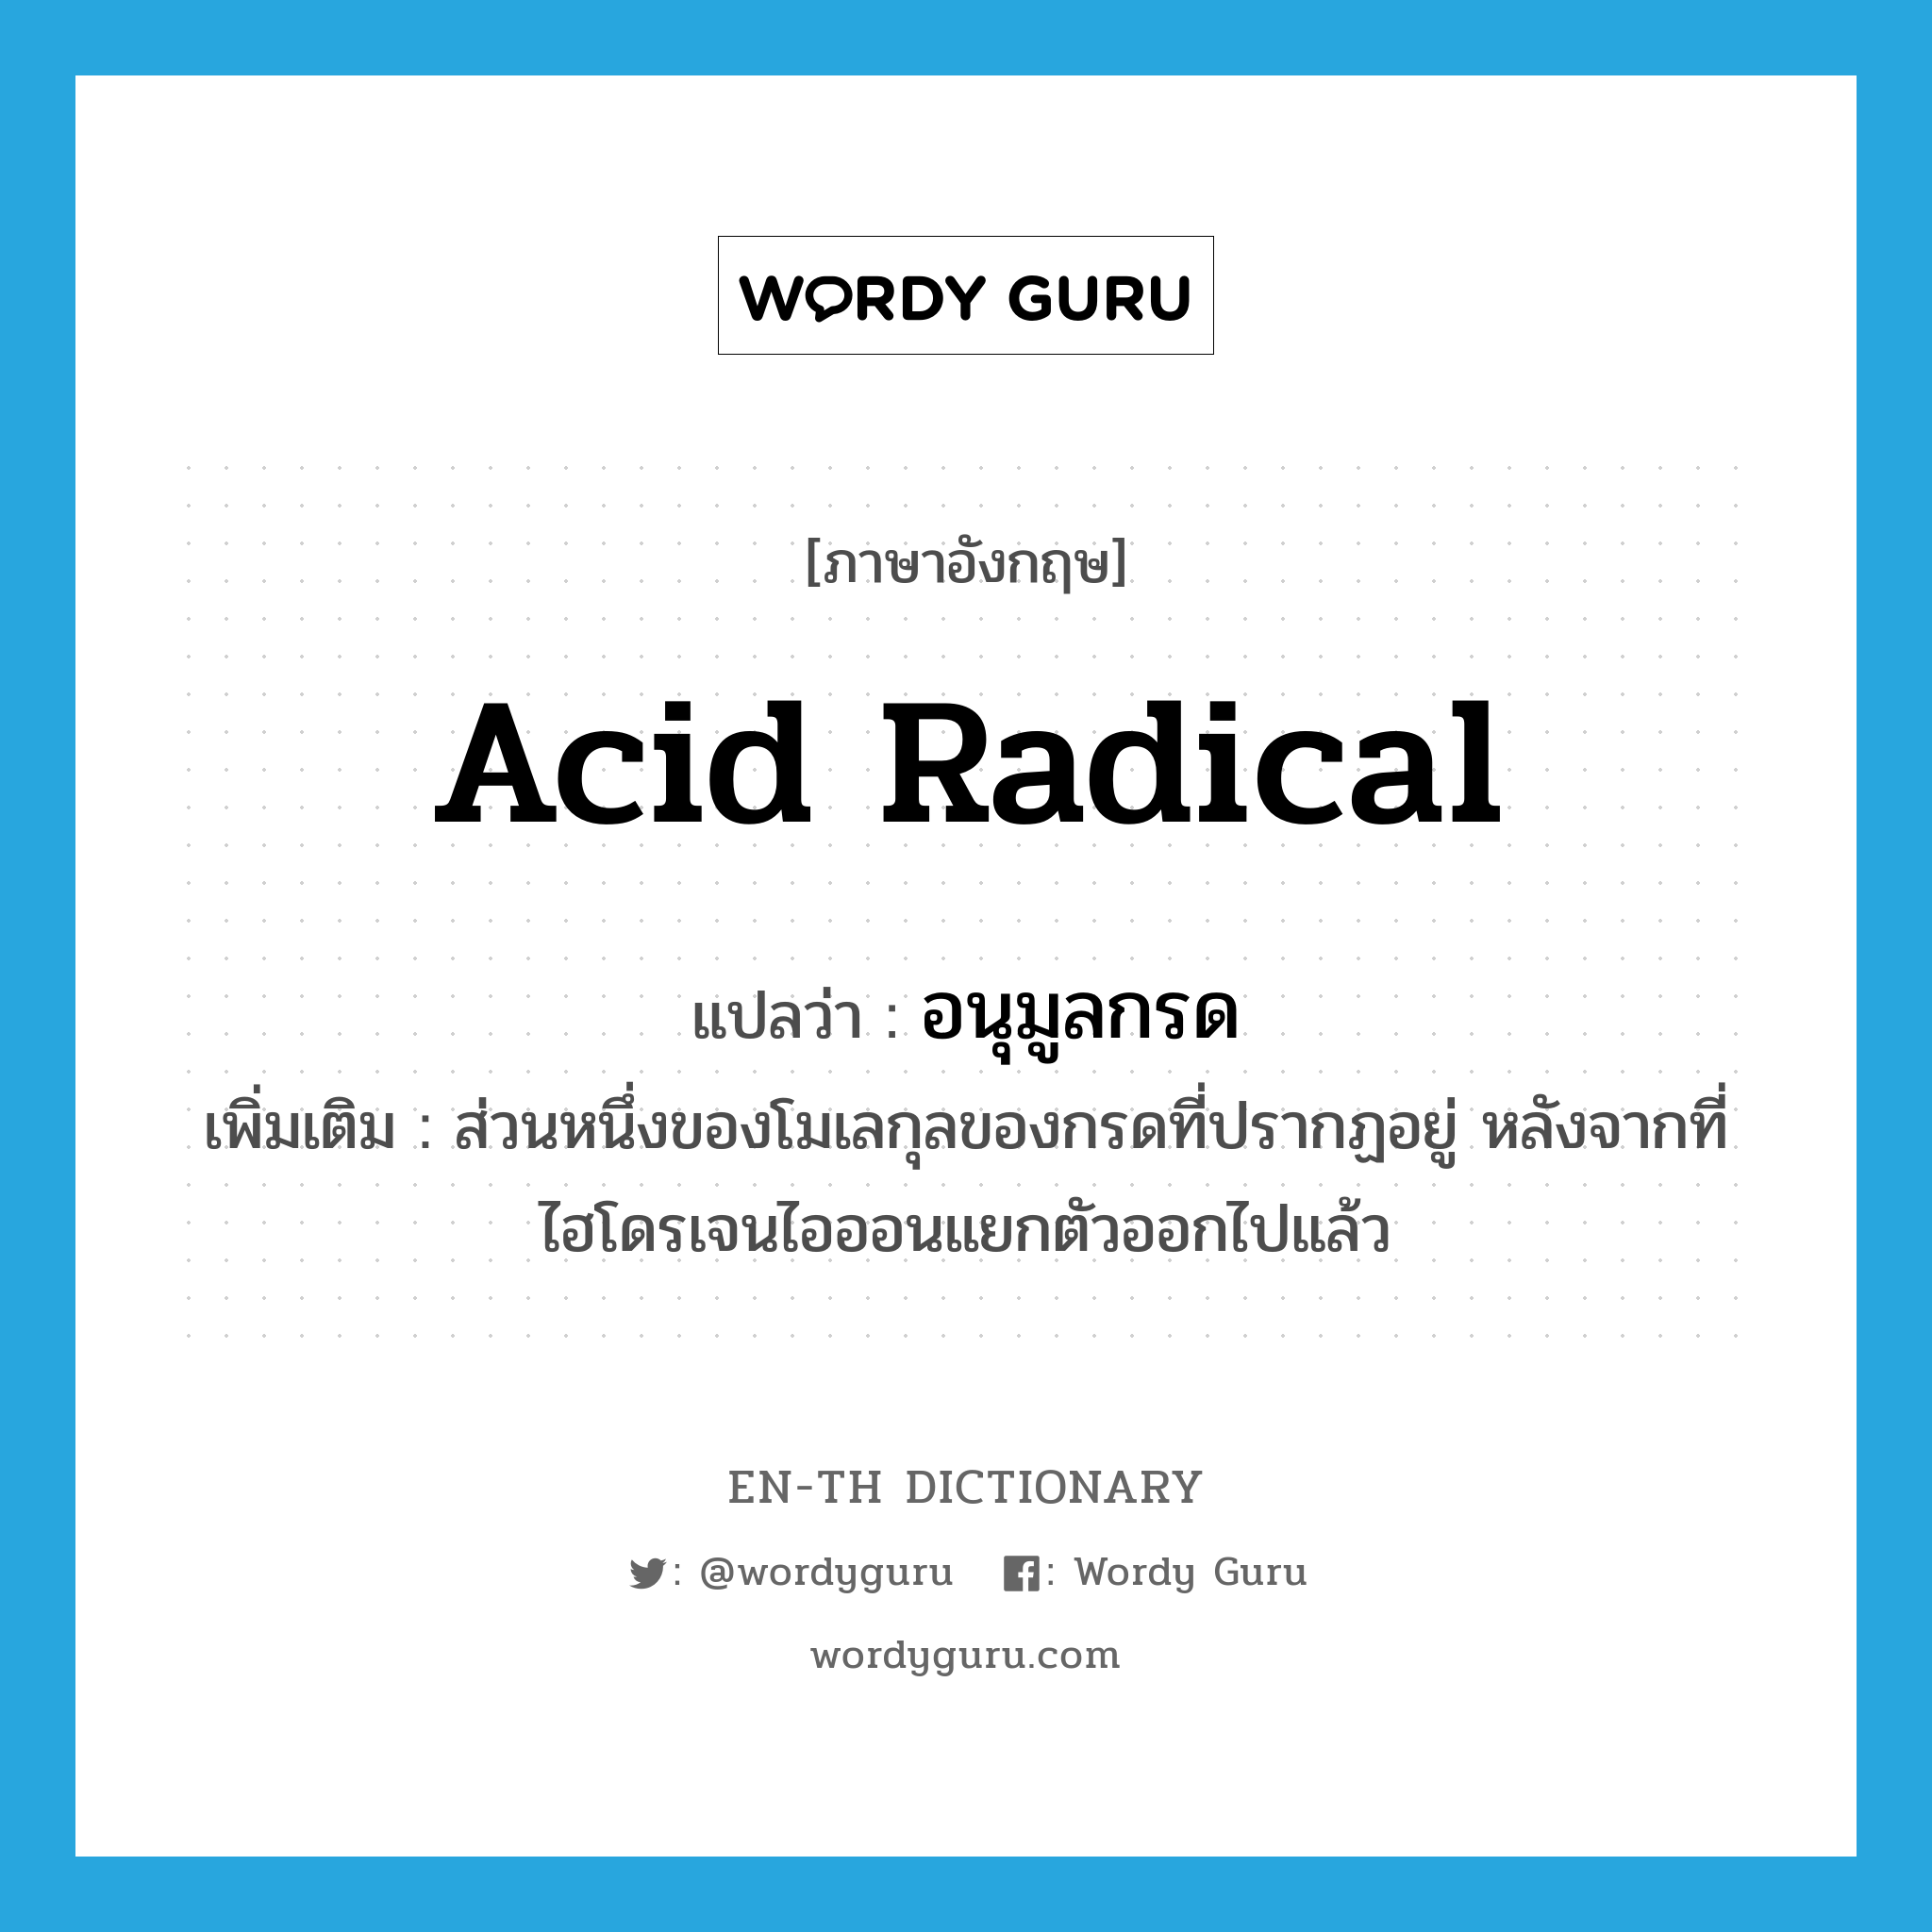 acid radical แปลว่า?, คำศัพท์ภาษาอังกฤษ acid radical แปลว่า อนุมูลกรด ประเภท N เพิ่มเติม ส่วนหนึ่งของโมเลกุลของกรดที่ปรากฏอยู่ หลังจากที่ไฮโดรเจนไอออนแยกตัวออกไปแล้ว หมวด N